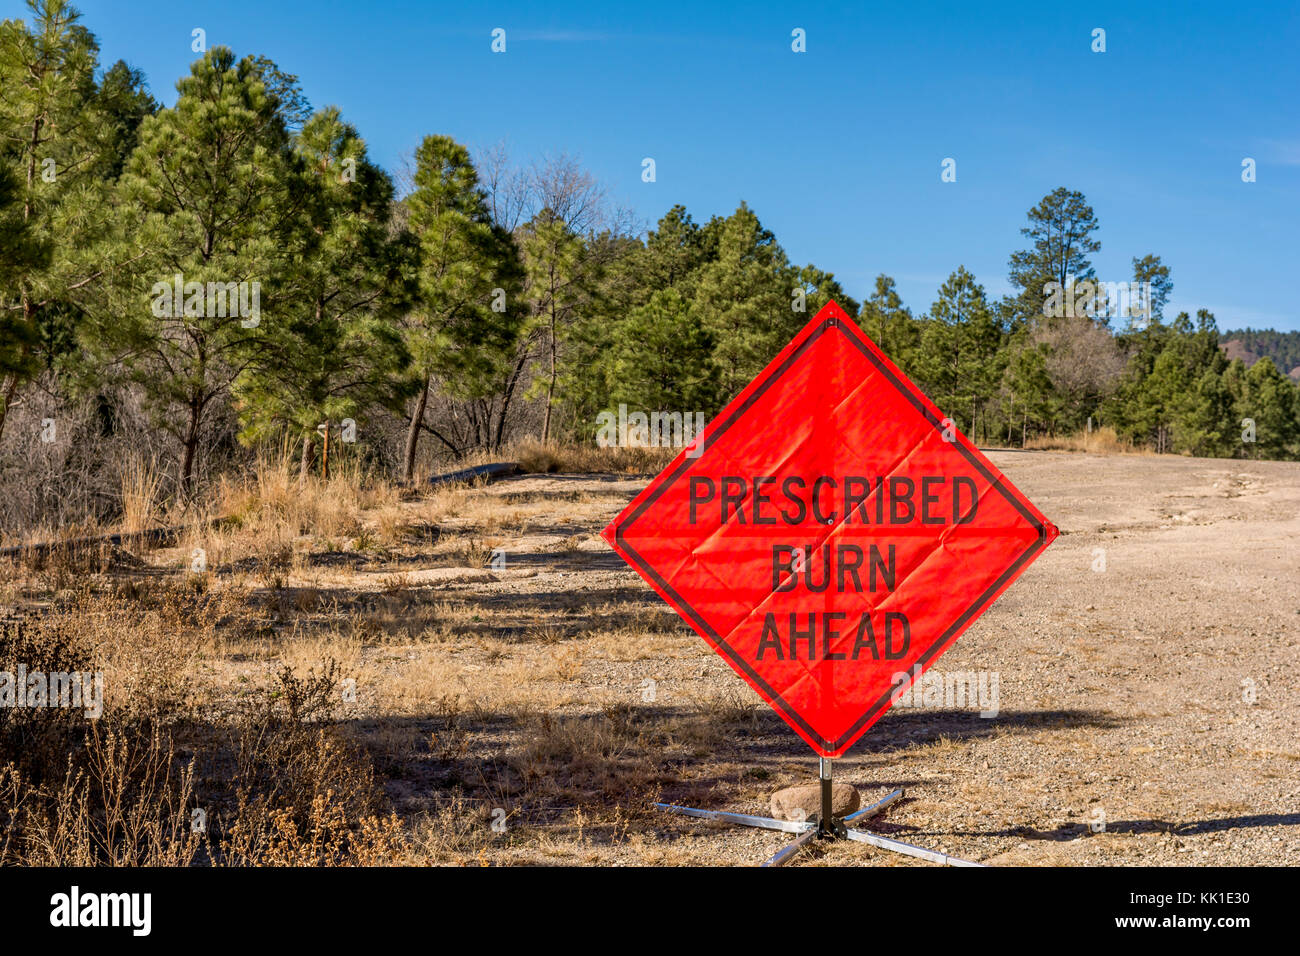 Masterizzazione prescritto segno per la prevenzione degli incendi forestali nei pressi di alberi di pino nel Lincoln National Forest, Nuovo Messico, Stati Uniti d'America. Foto Stock